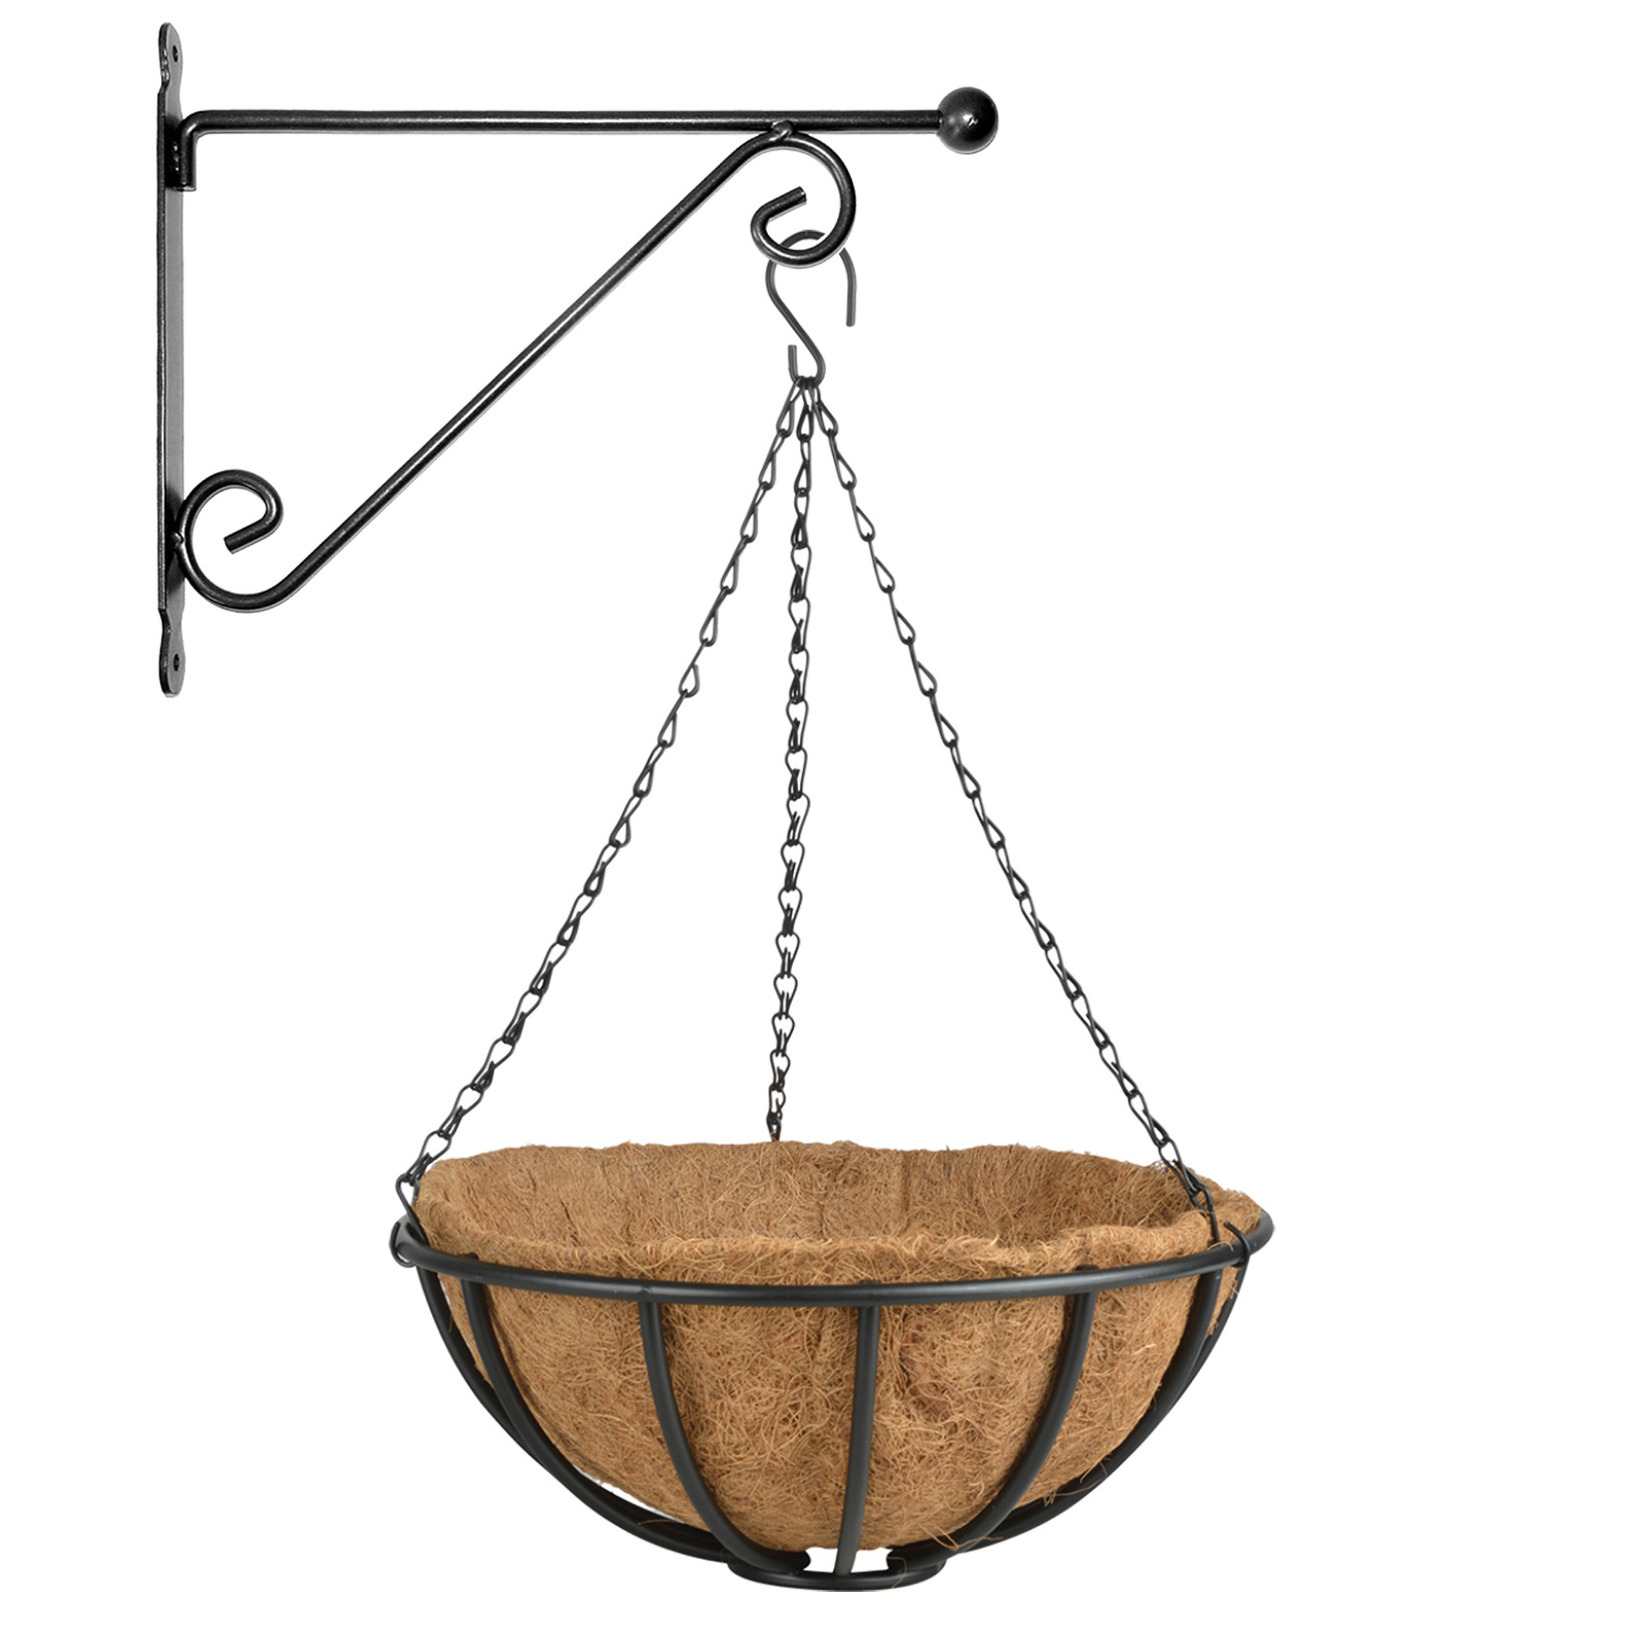 Hanging basket 35 cm met metalen muurhaak en kokos inlegvel